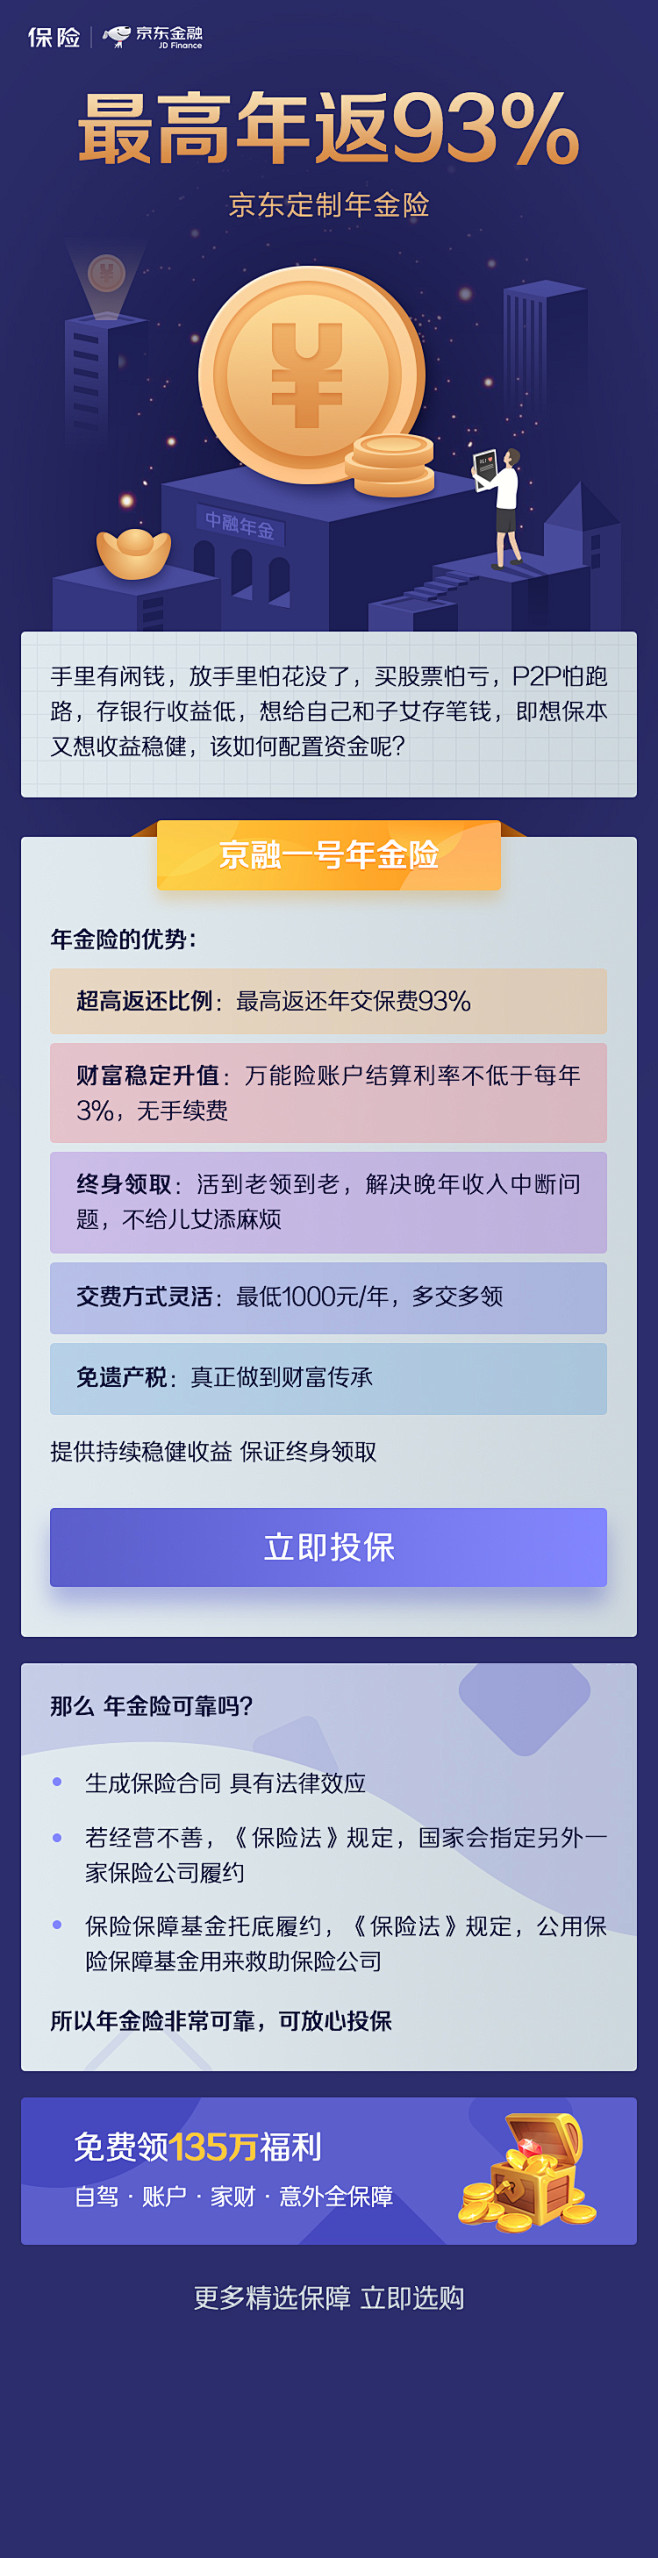 中融年金优化_潇云的原创画板 _app_...